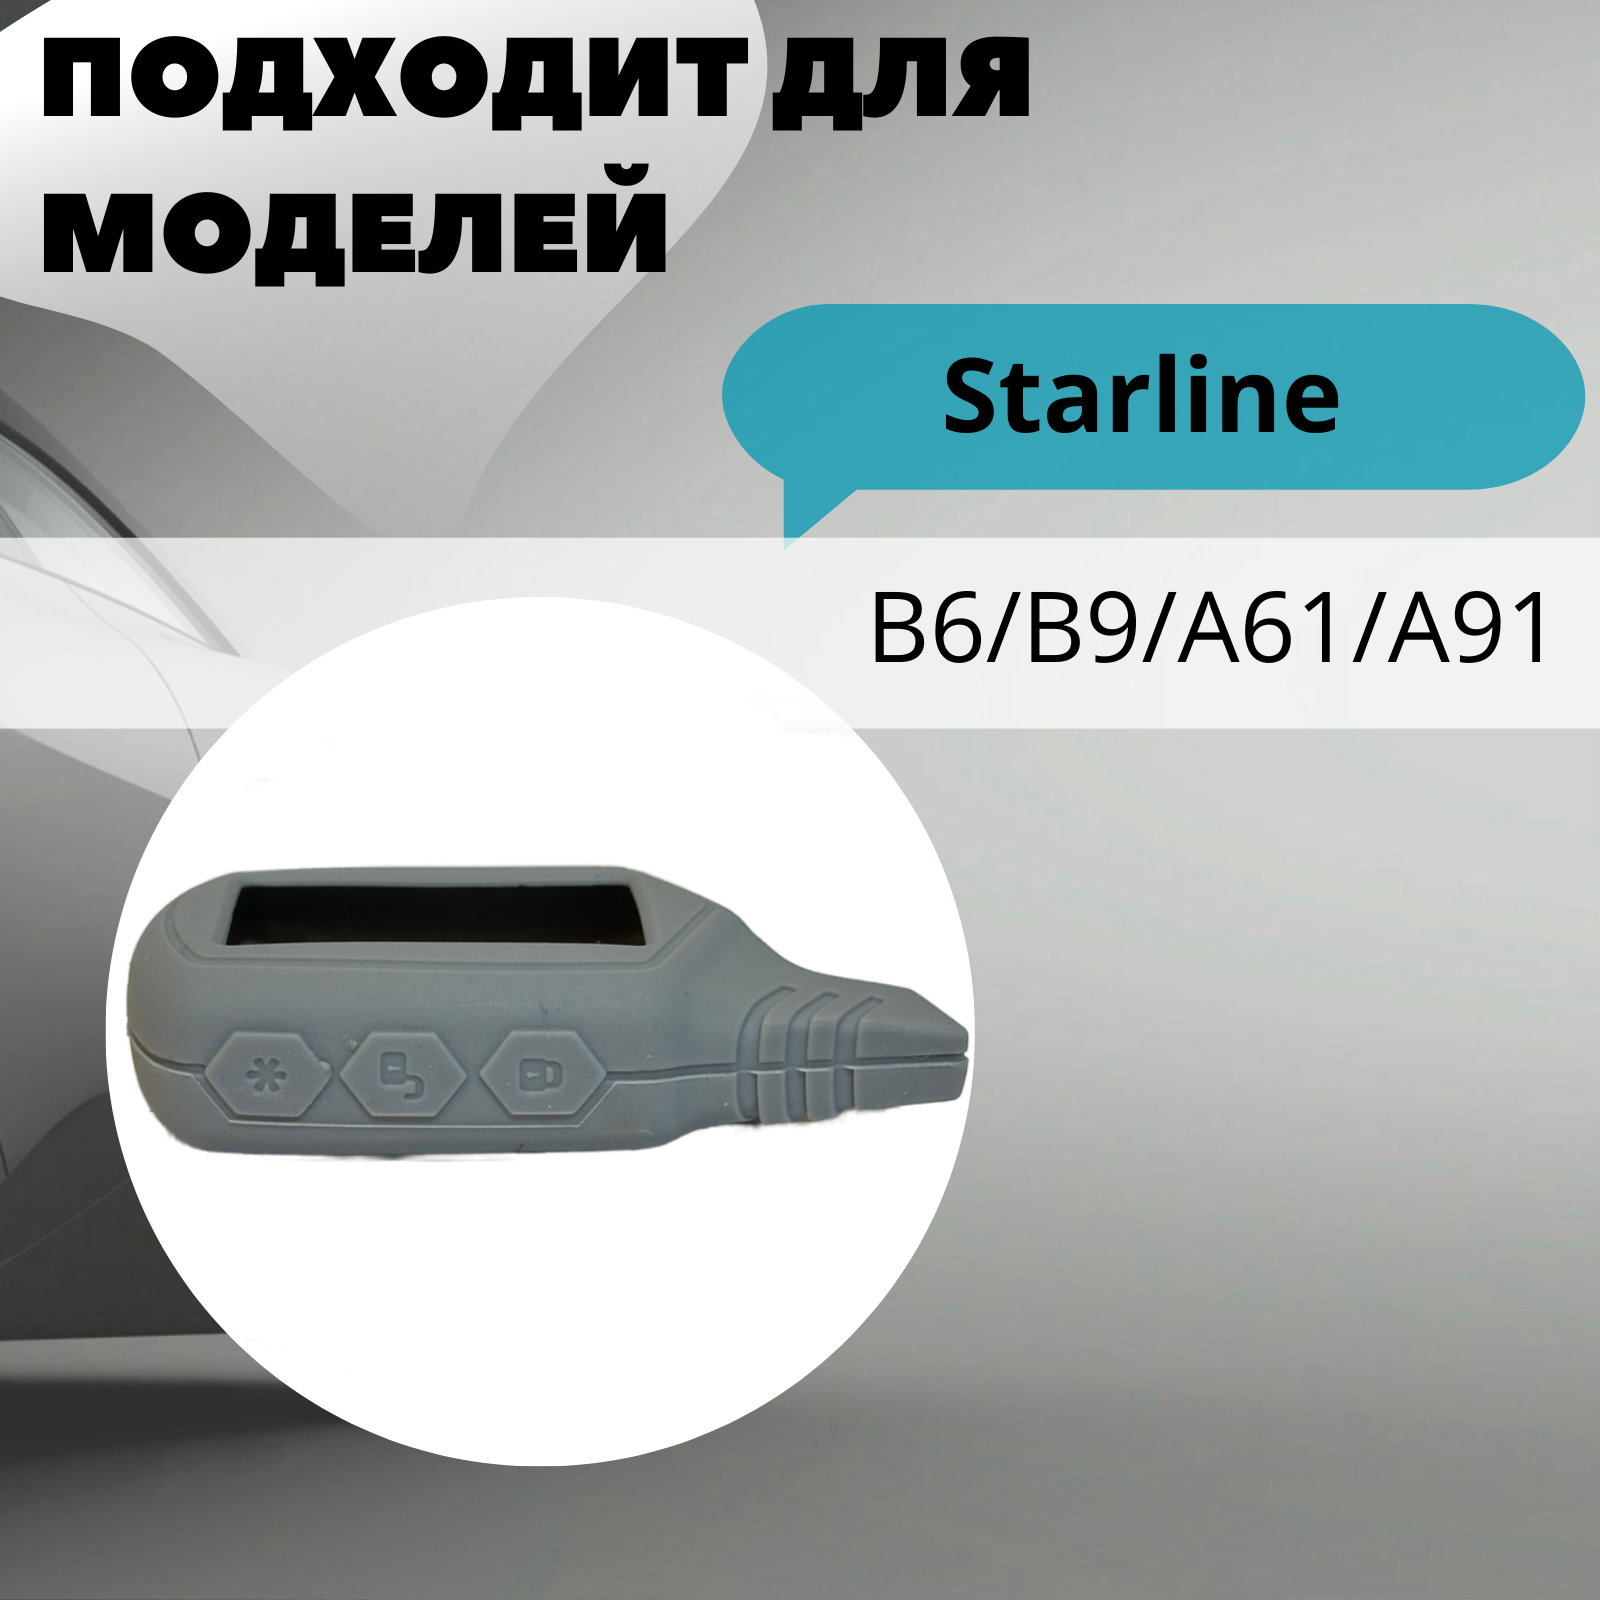 Чехол силиконовый Старлайн подходит для брелока ( пульта ) автосигнализации Starline B6 / B9 / A61 / A91 (Цвет серый)